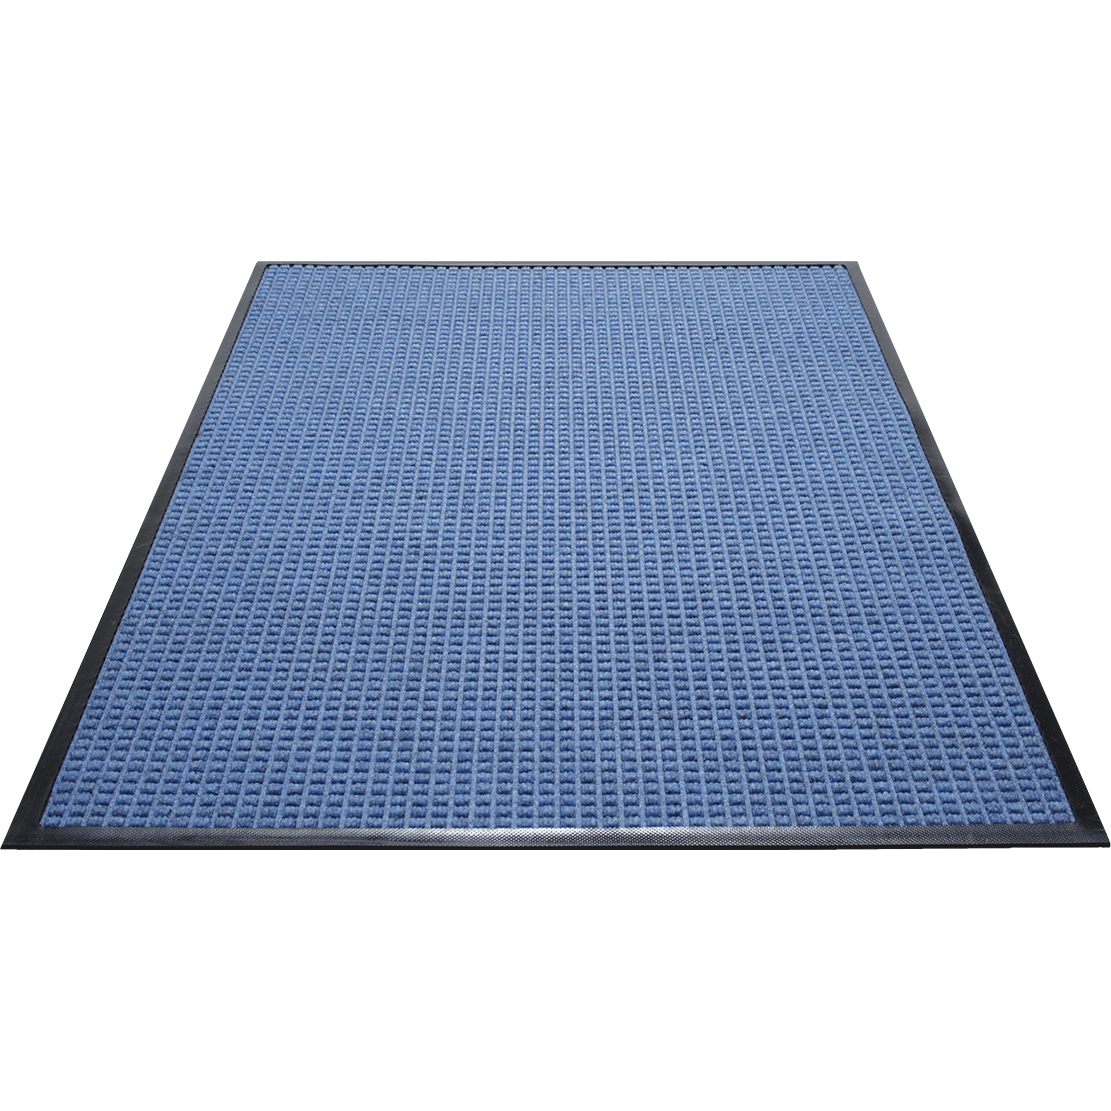 WaterGuard Indoor Mat 36” x 192” - Charcoal